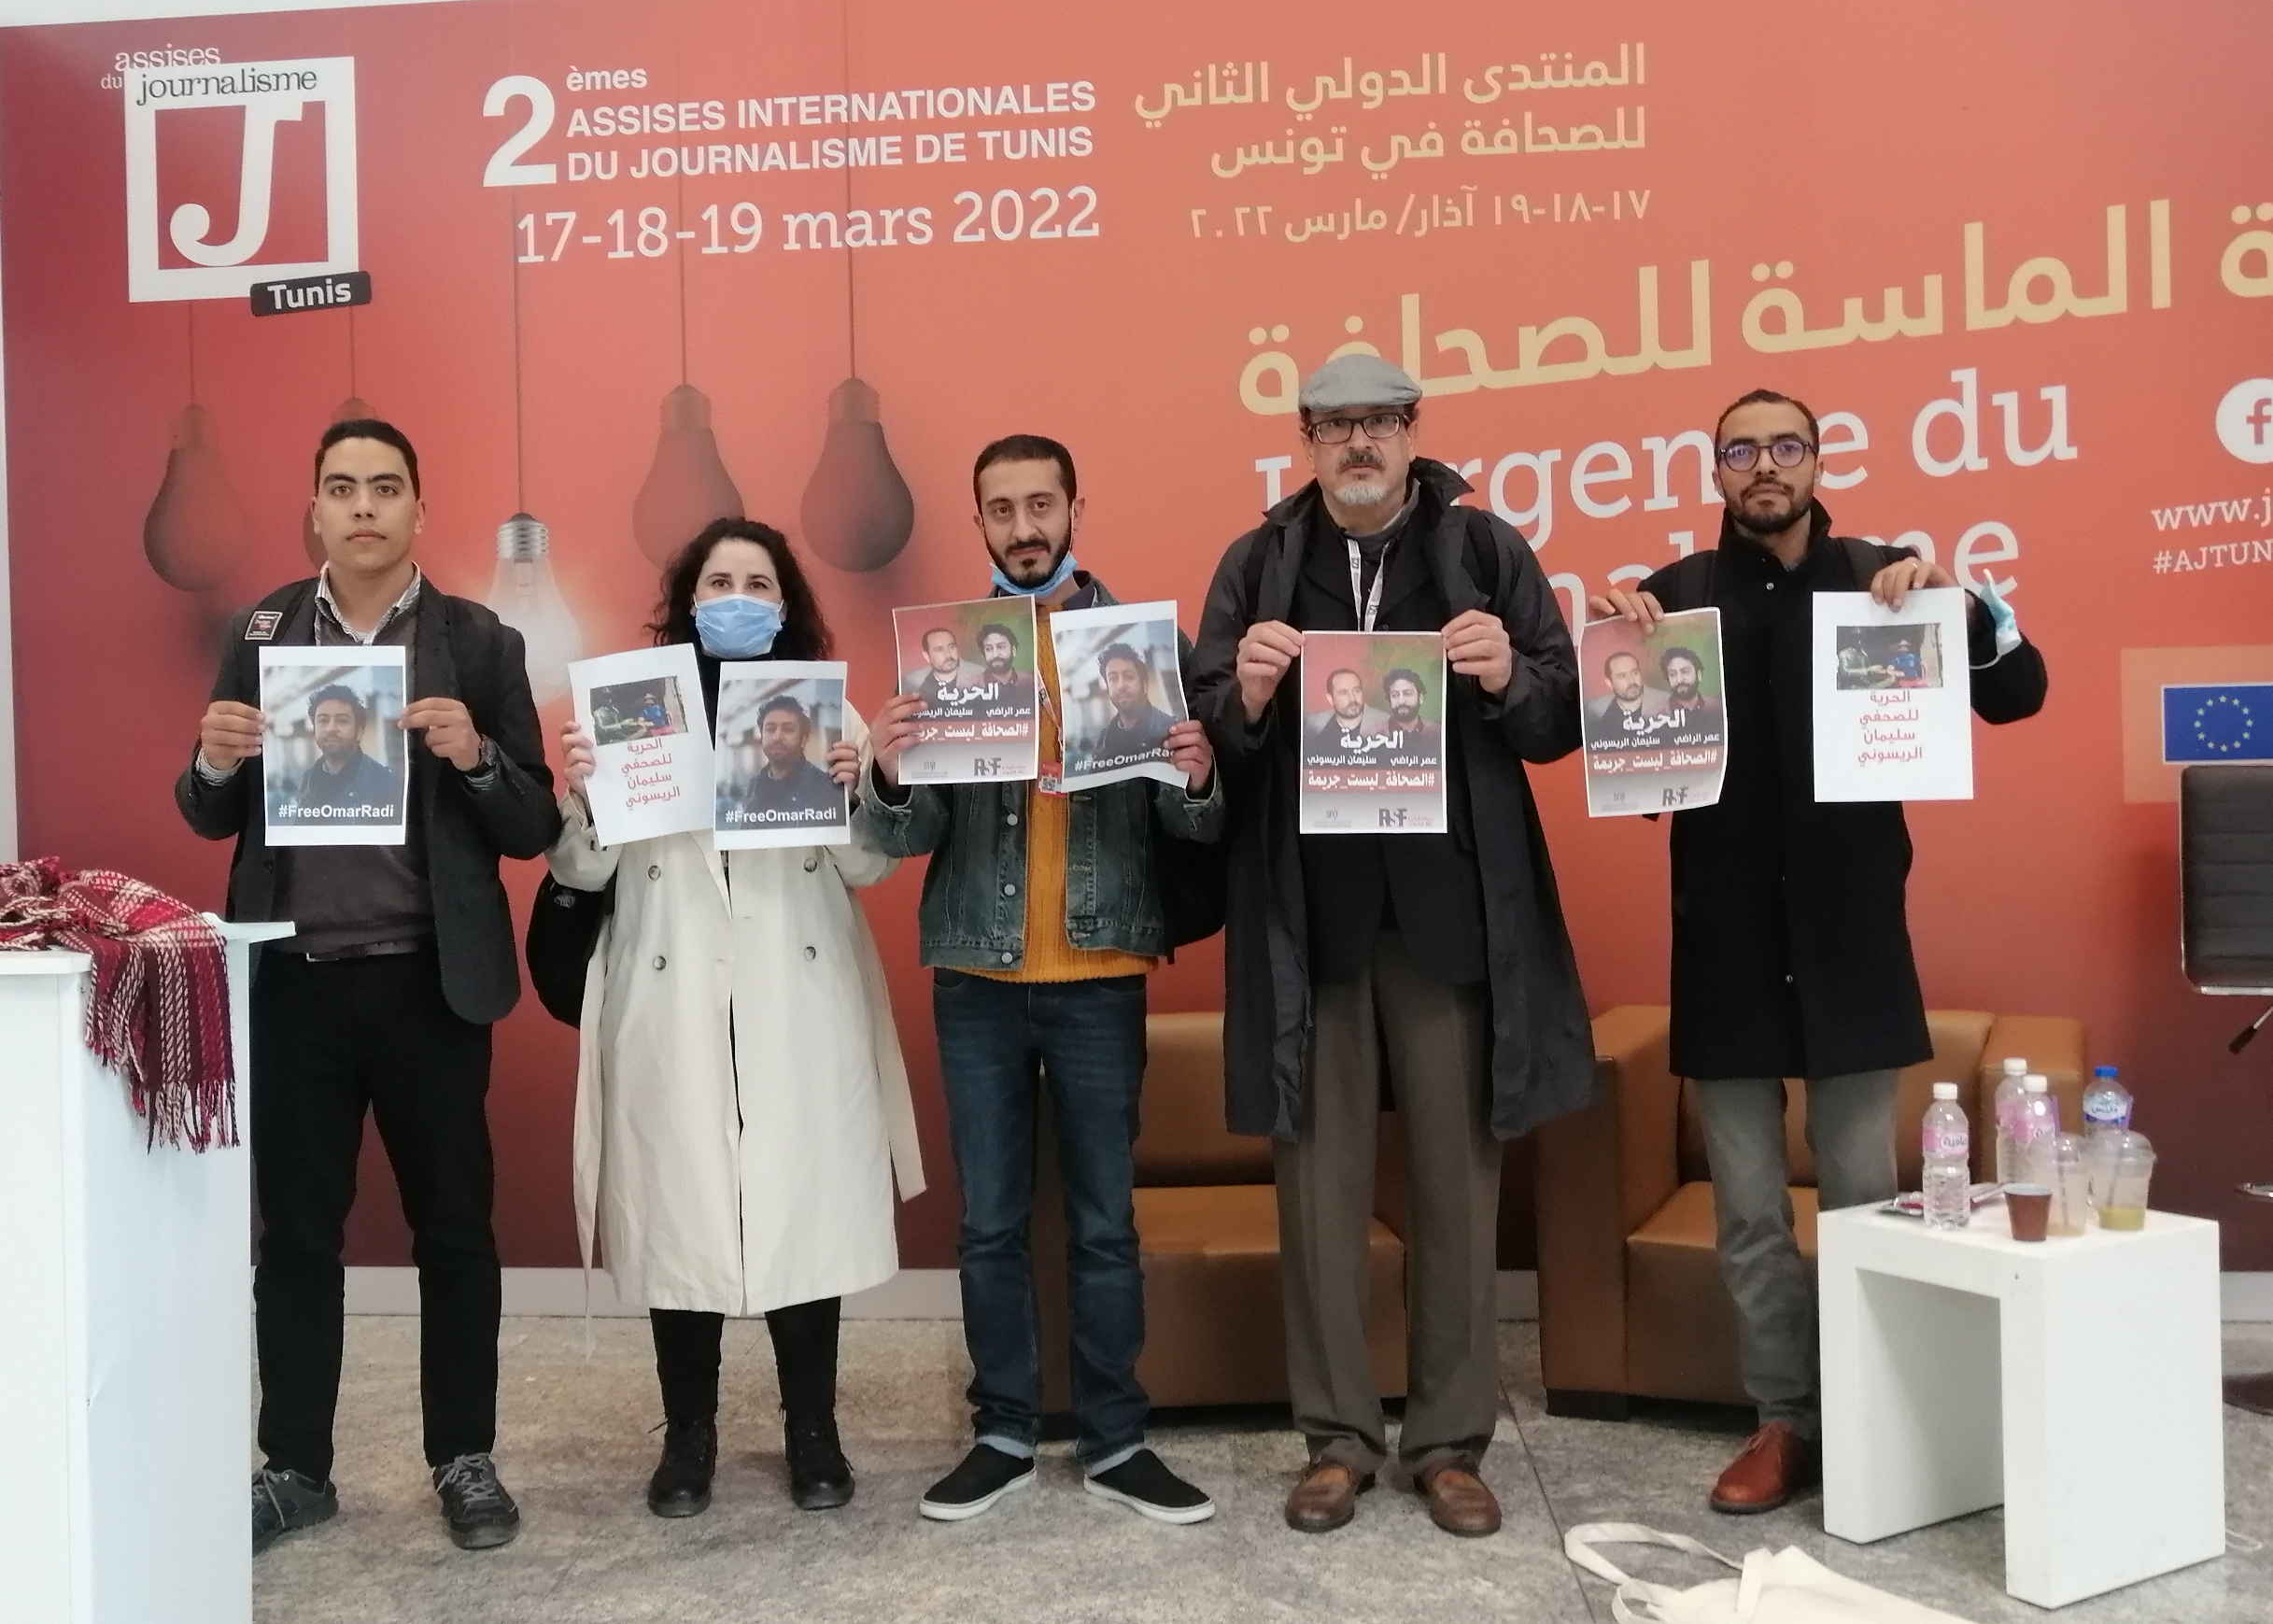 هاجر وصحفيون من المغرب يطالبون بالعدالة للصحفيين المعتقلين عمر الراضي وسليمان الريسوني خلال المؤتمر الدولي للصحافة في تونس – آذار/ مارس 2022.